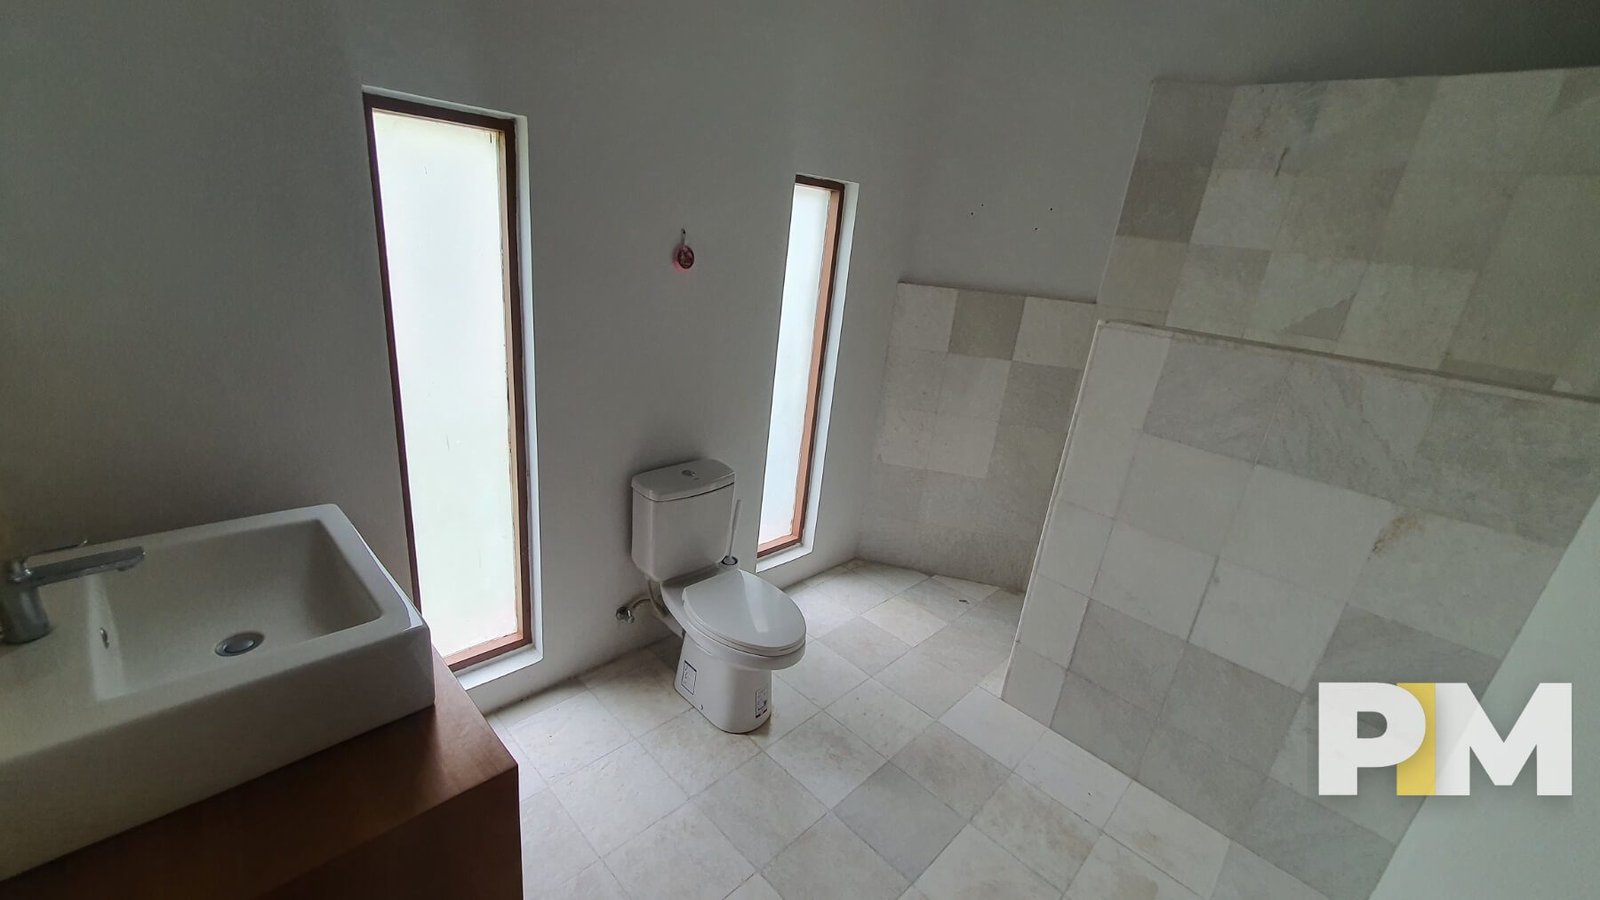 Toilet room sink - Myanmar Real Estate